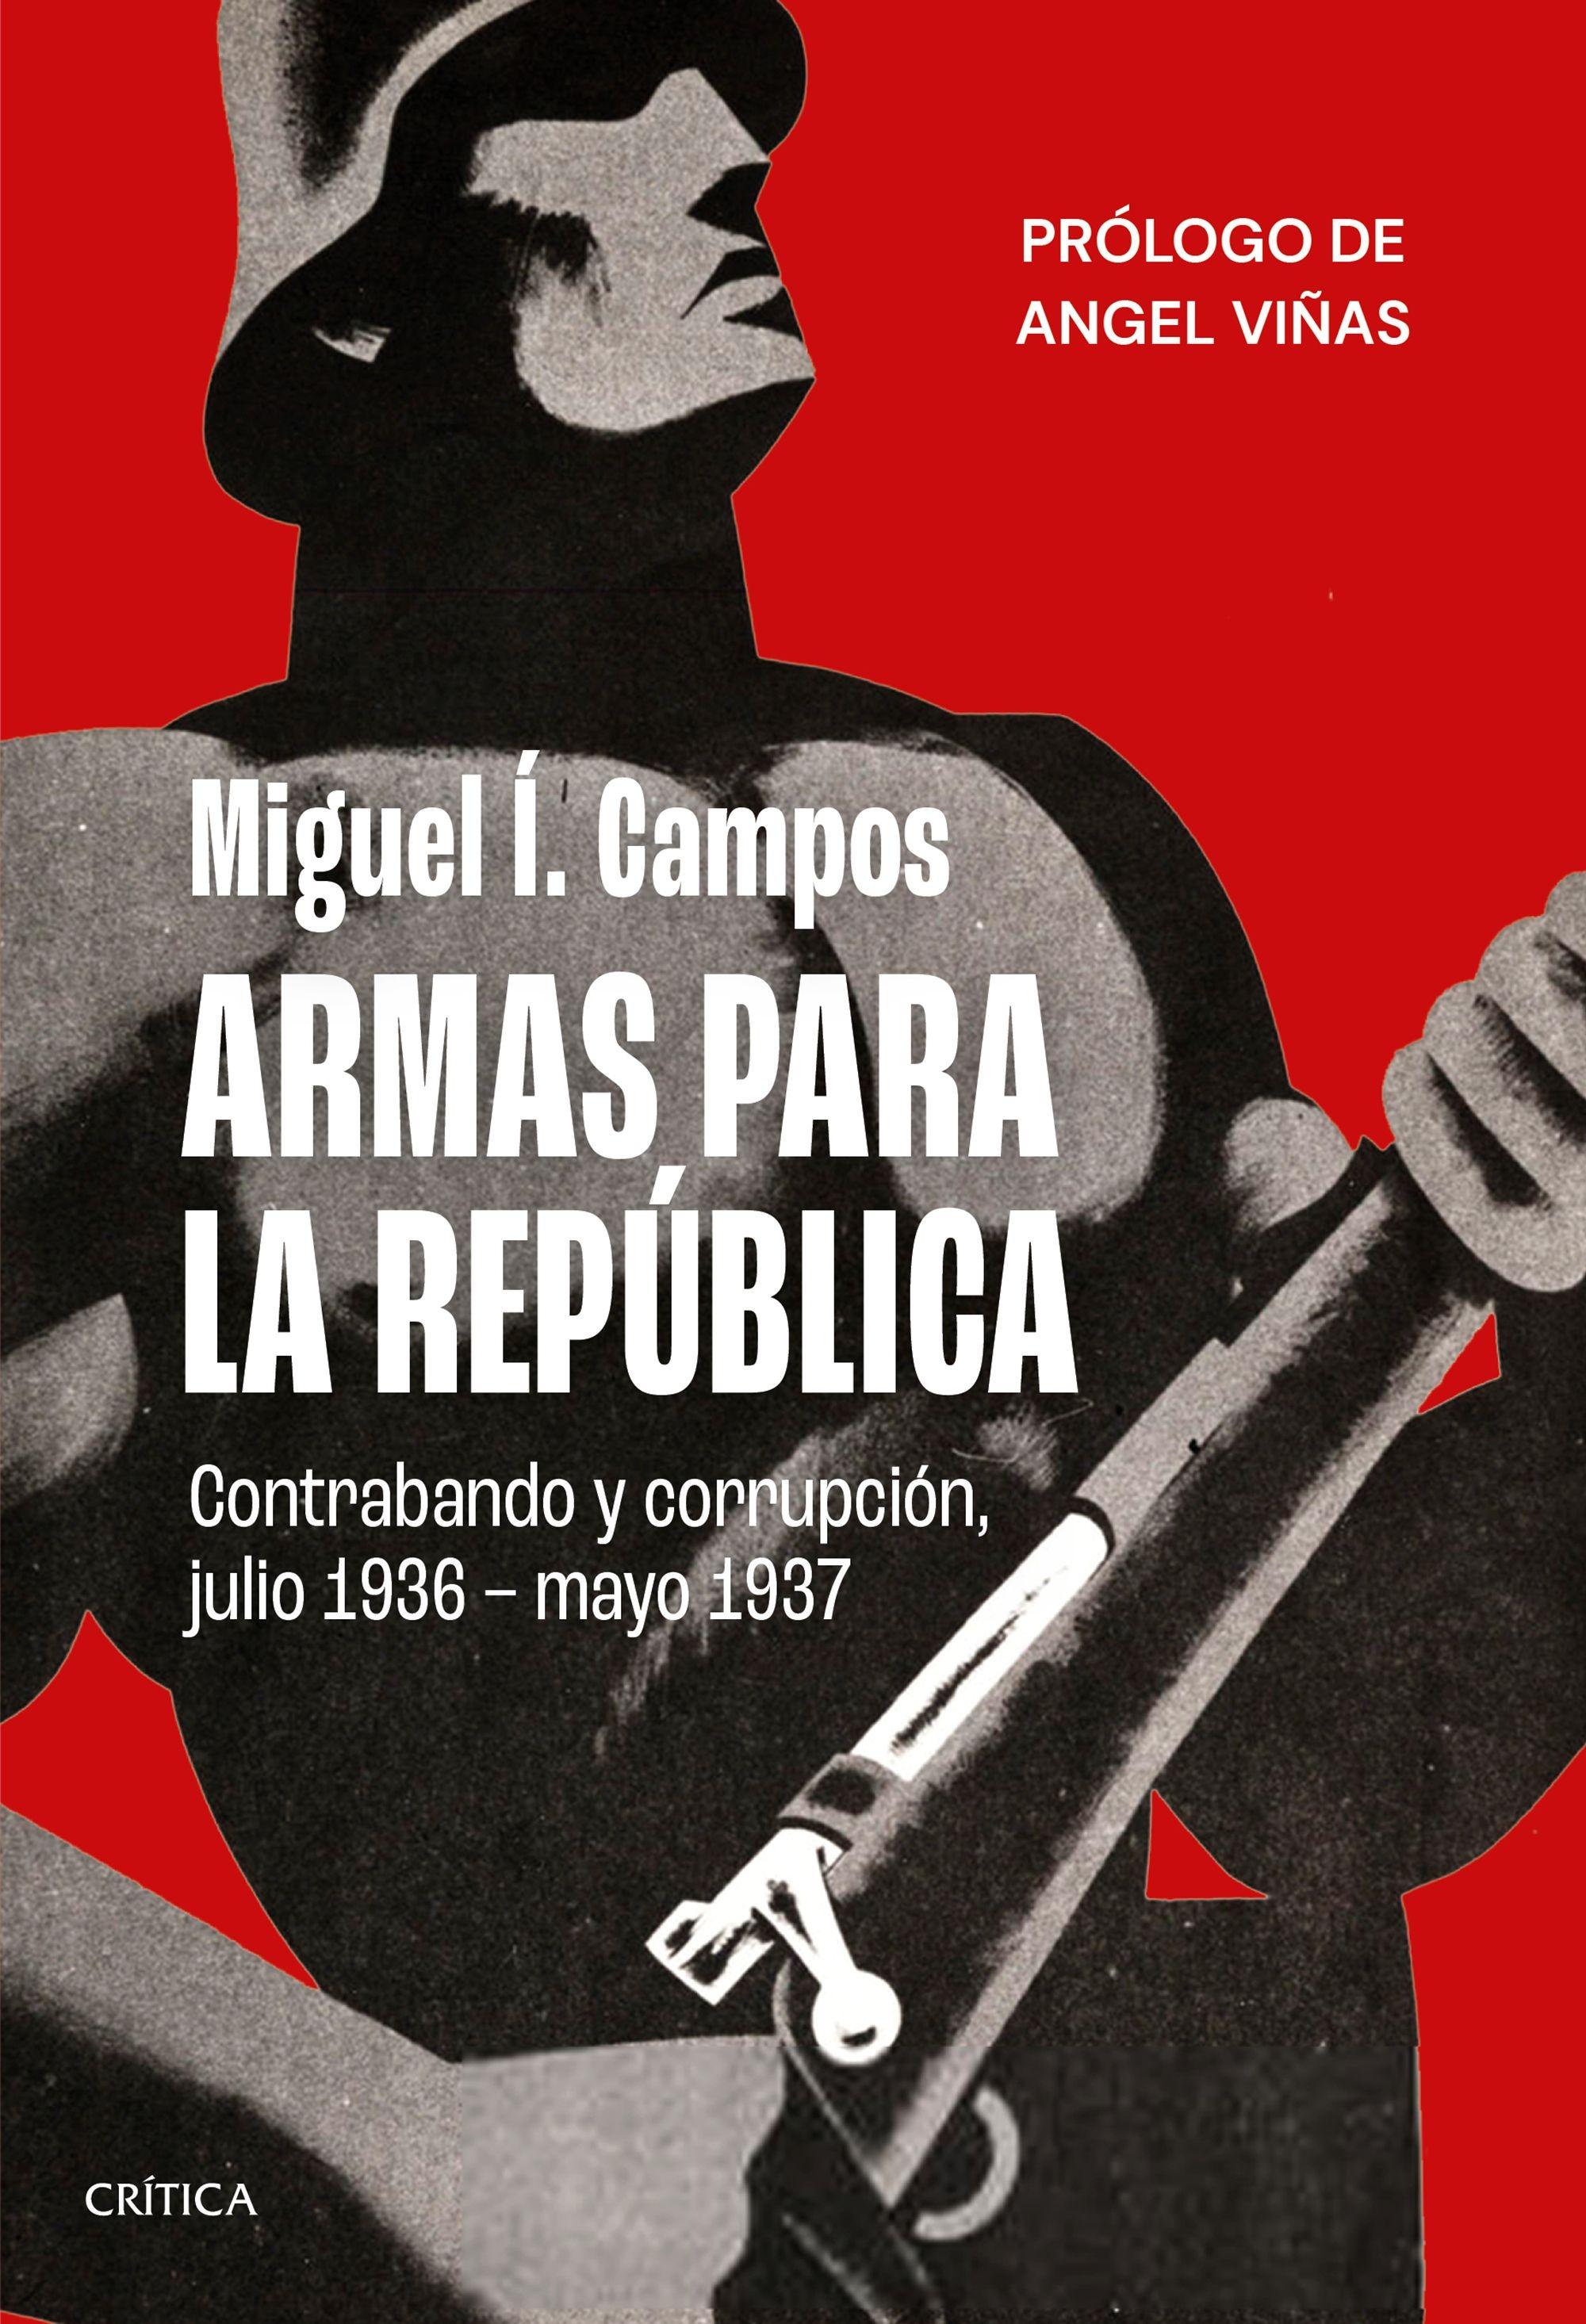 Armas para la República "Contrabando y corrupción, julio 1936 - mayo 1937". 